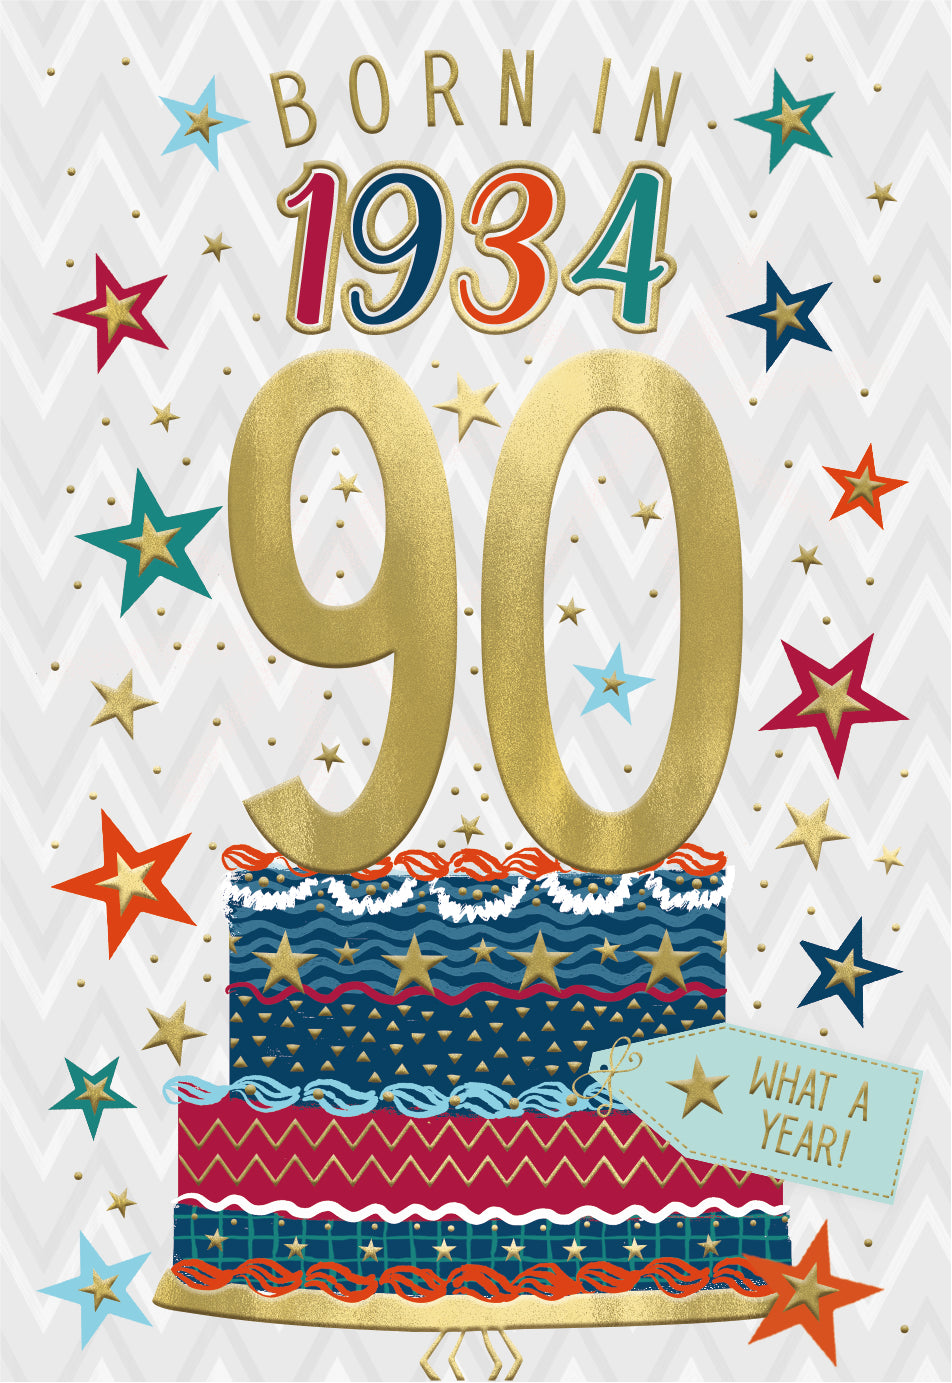 90th birthday card- born in 1934